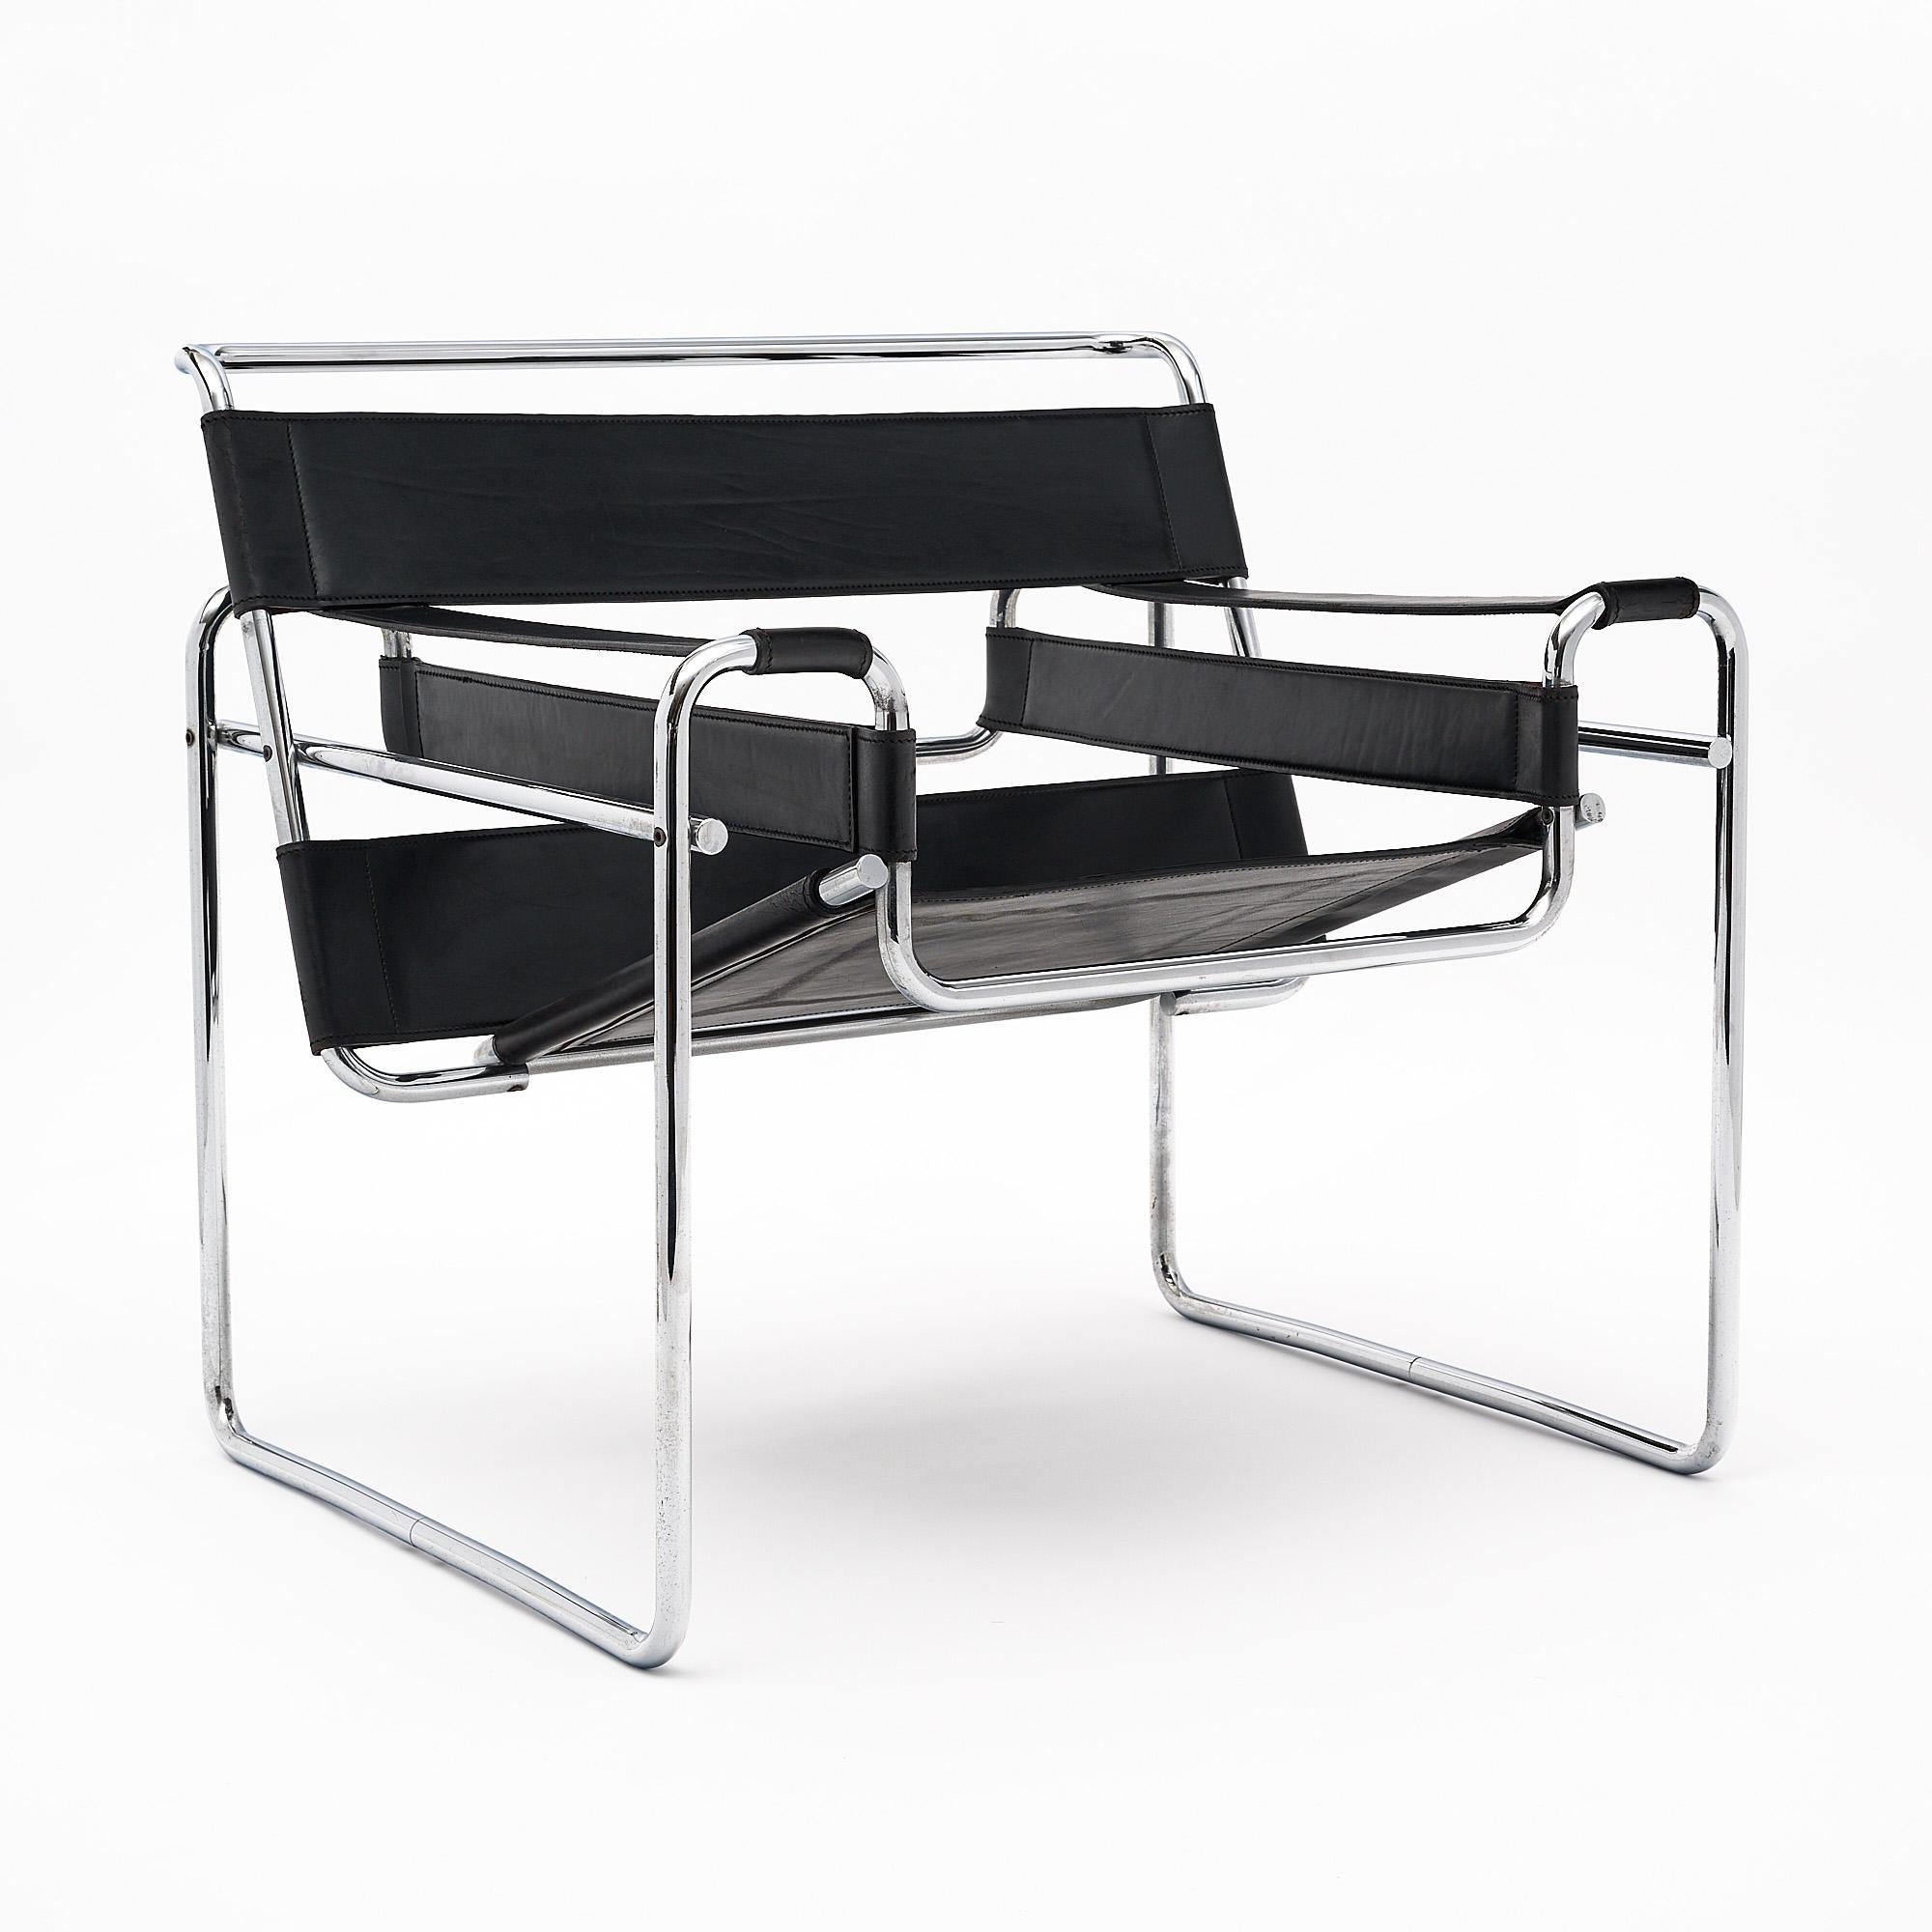 Fauteuil, italien, produit par Gavina. Ce fauteuil B3 de Marcel Breuer présente une construction tubulaire en acier chromé plié et un cuir teinté noir avec de jolies surpiqûres.